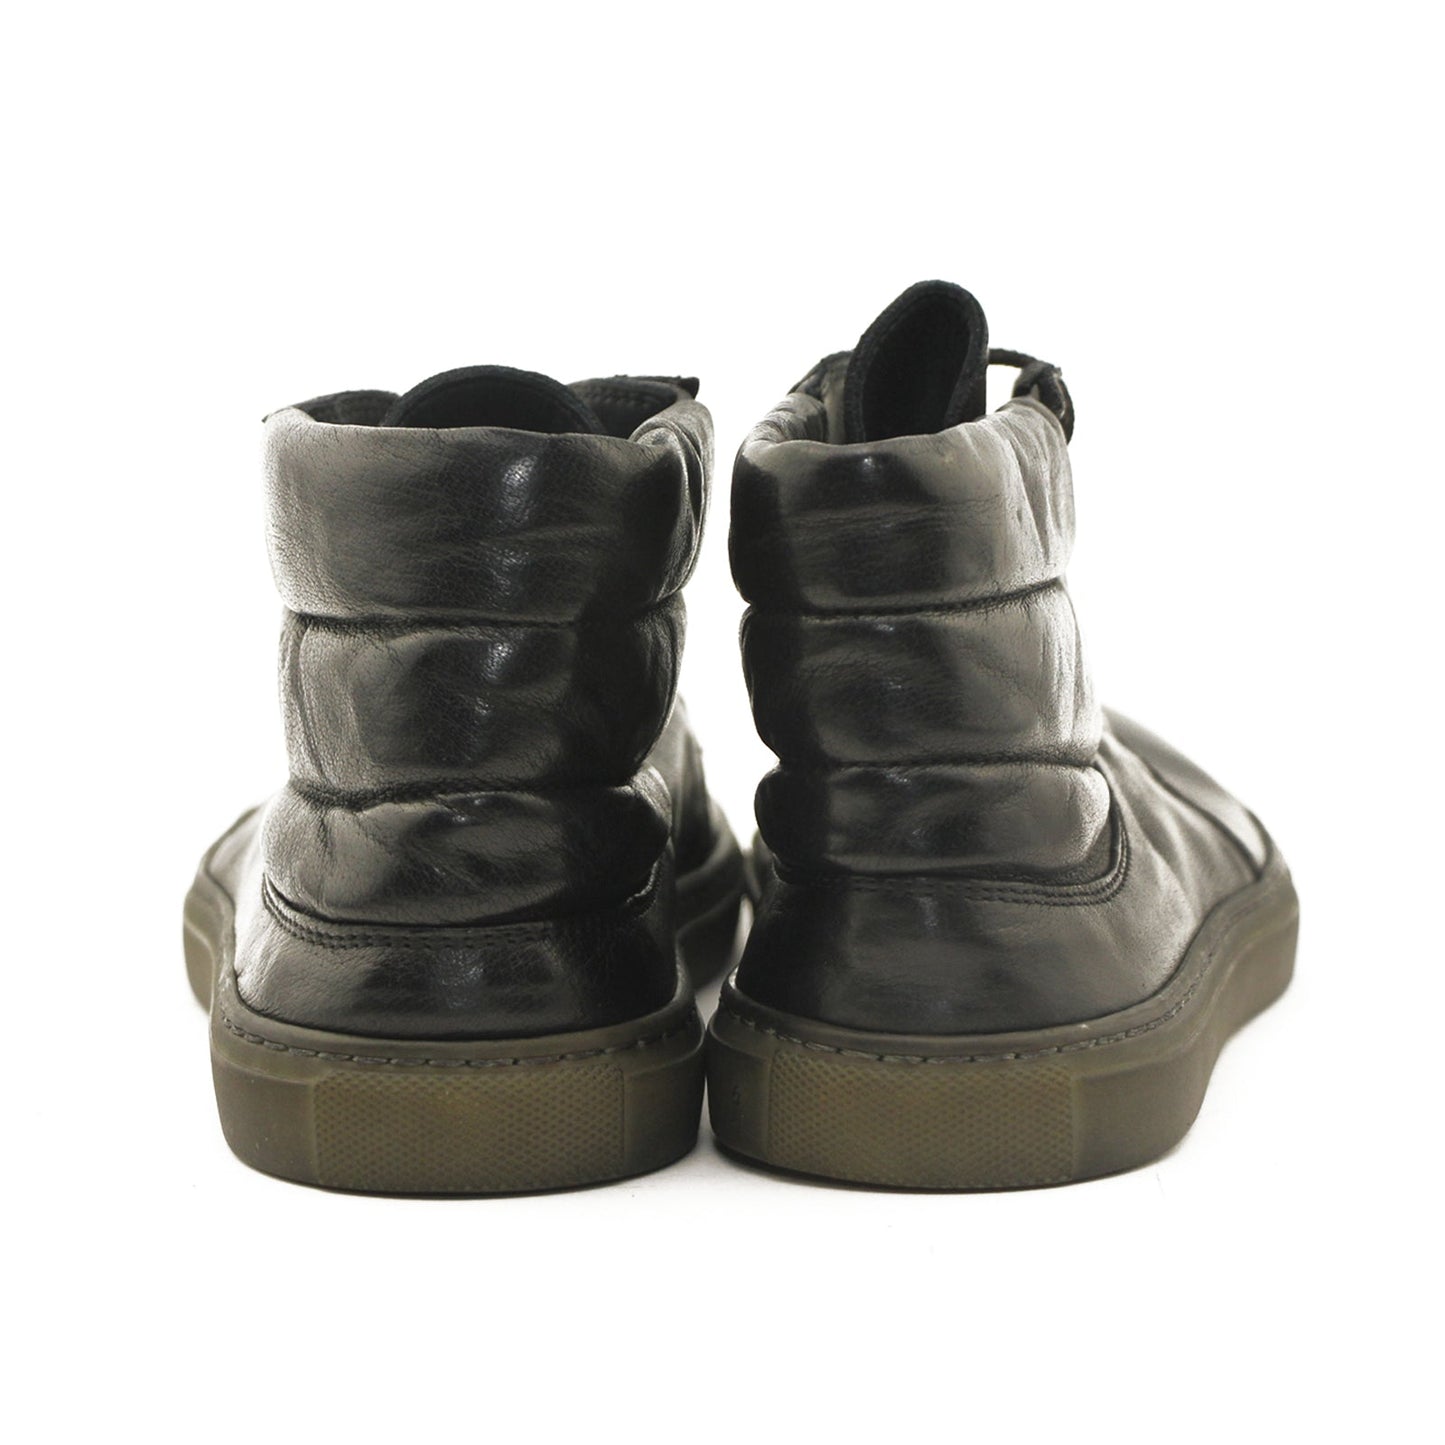 Bubetti 9915 Lux Nero Sort Dame Sneaker i Skind